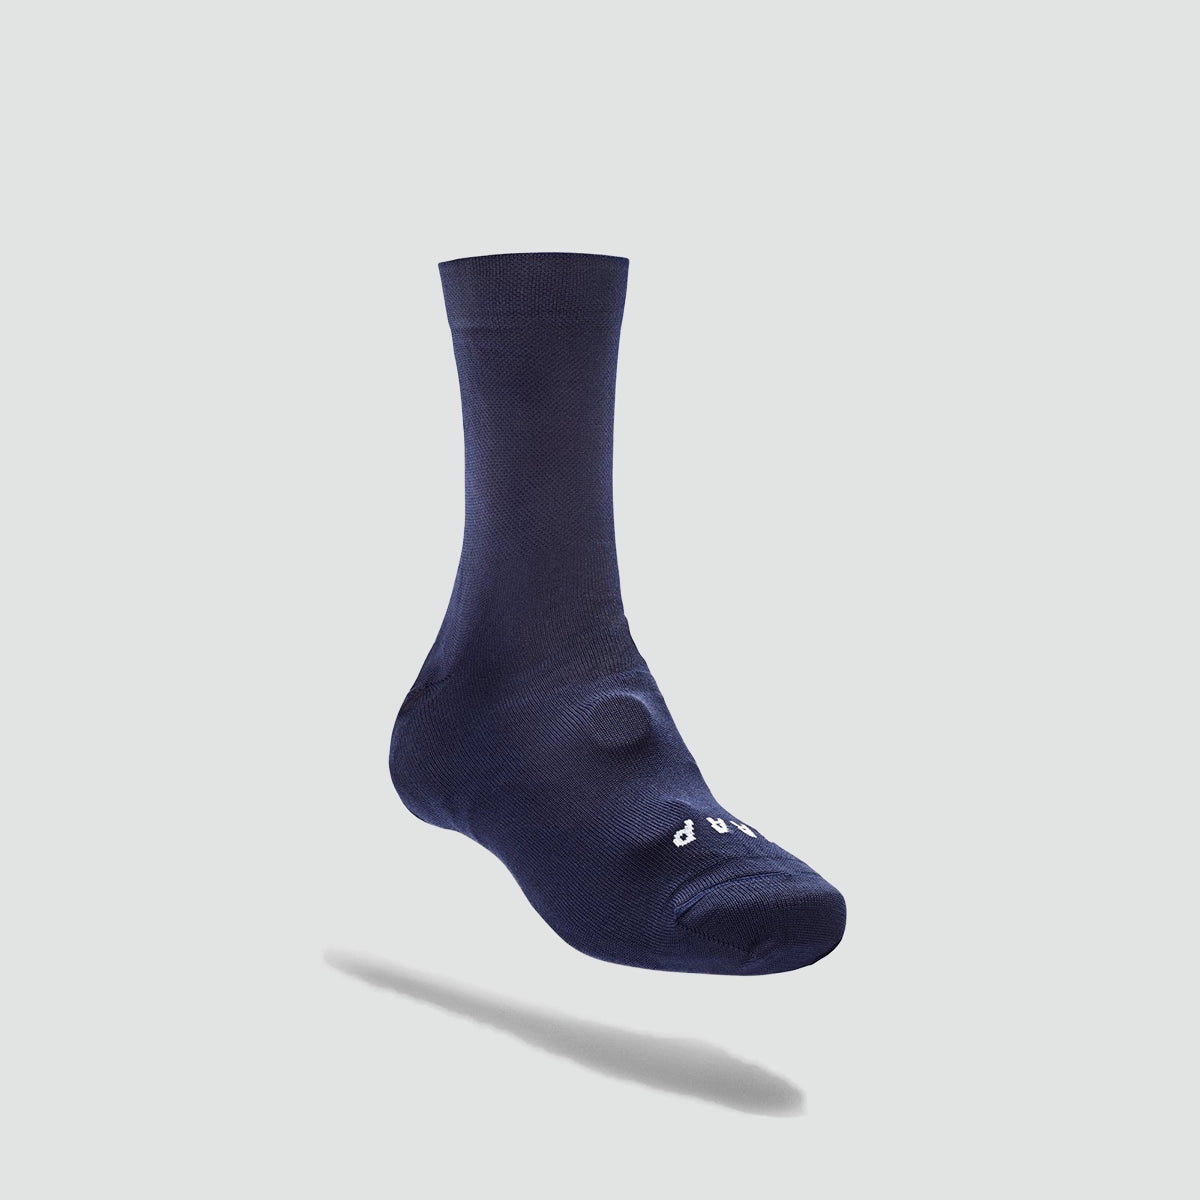 針織外套襪 - 海軍藍